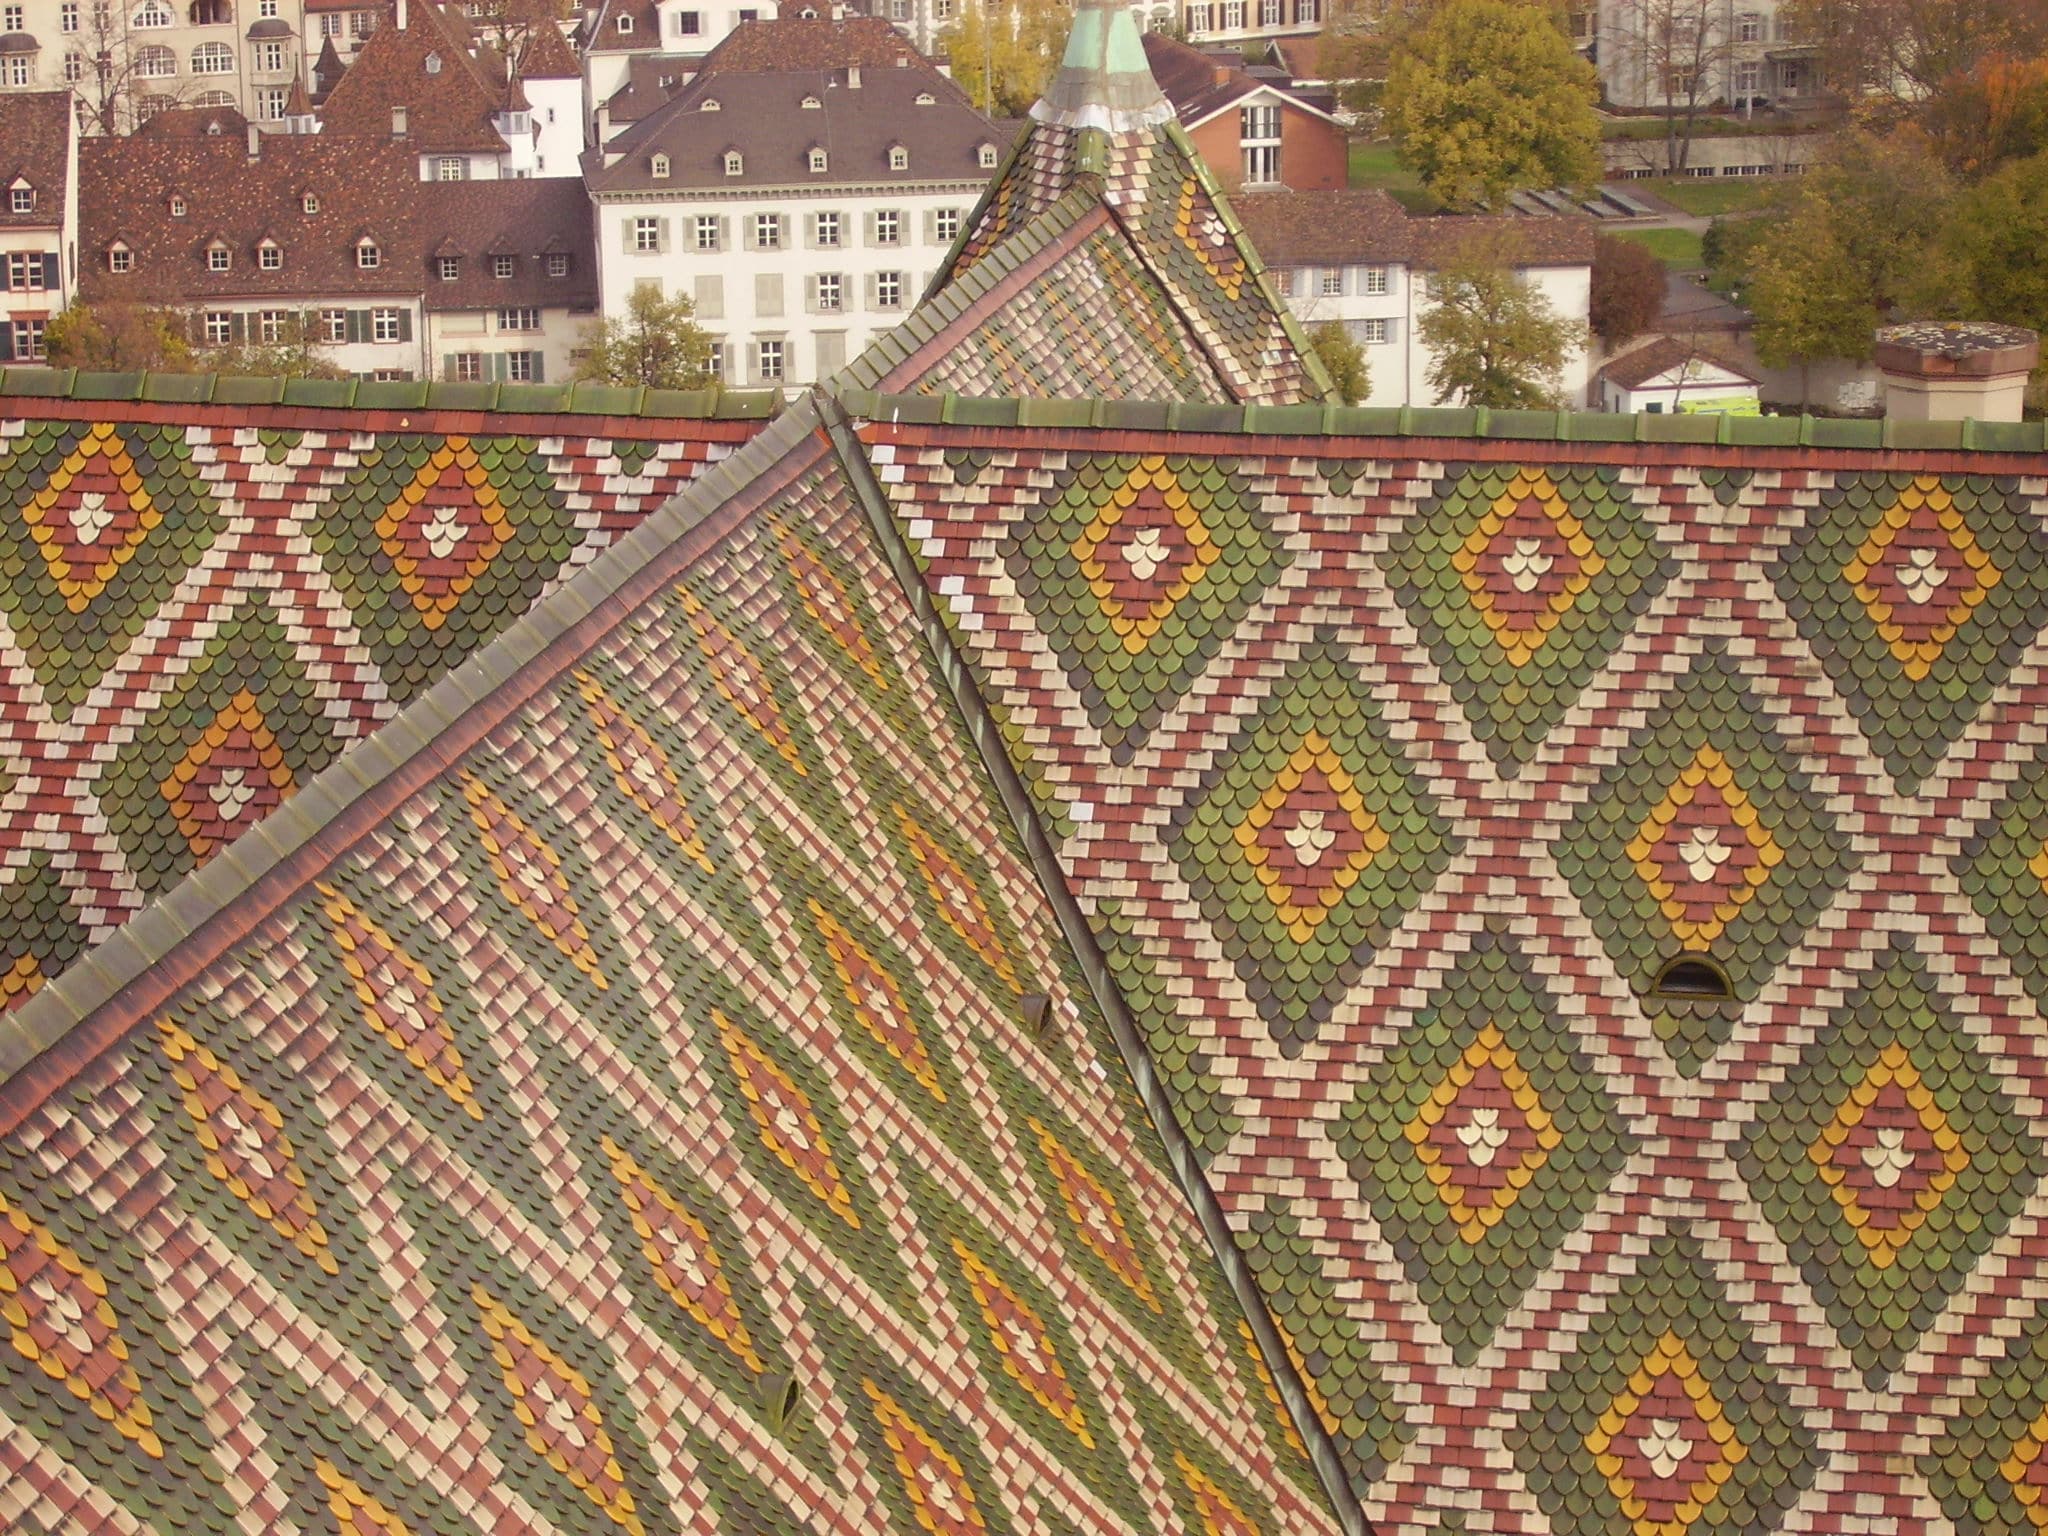 Détail du toit de la cathédrale de Bâle, Suisse.